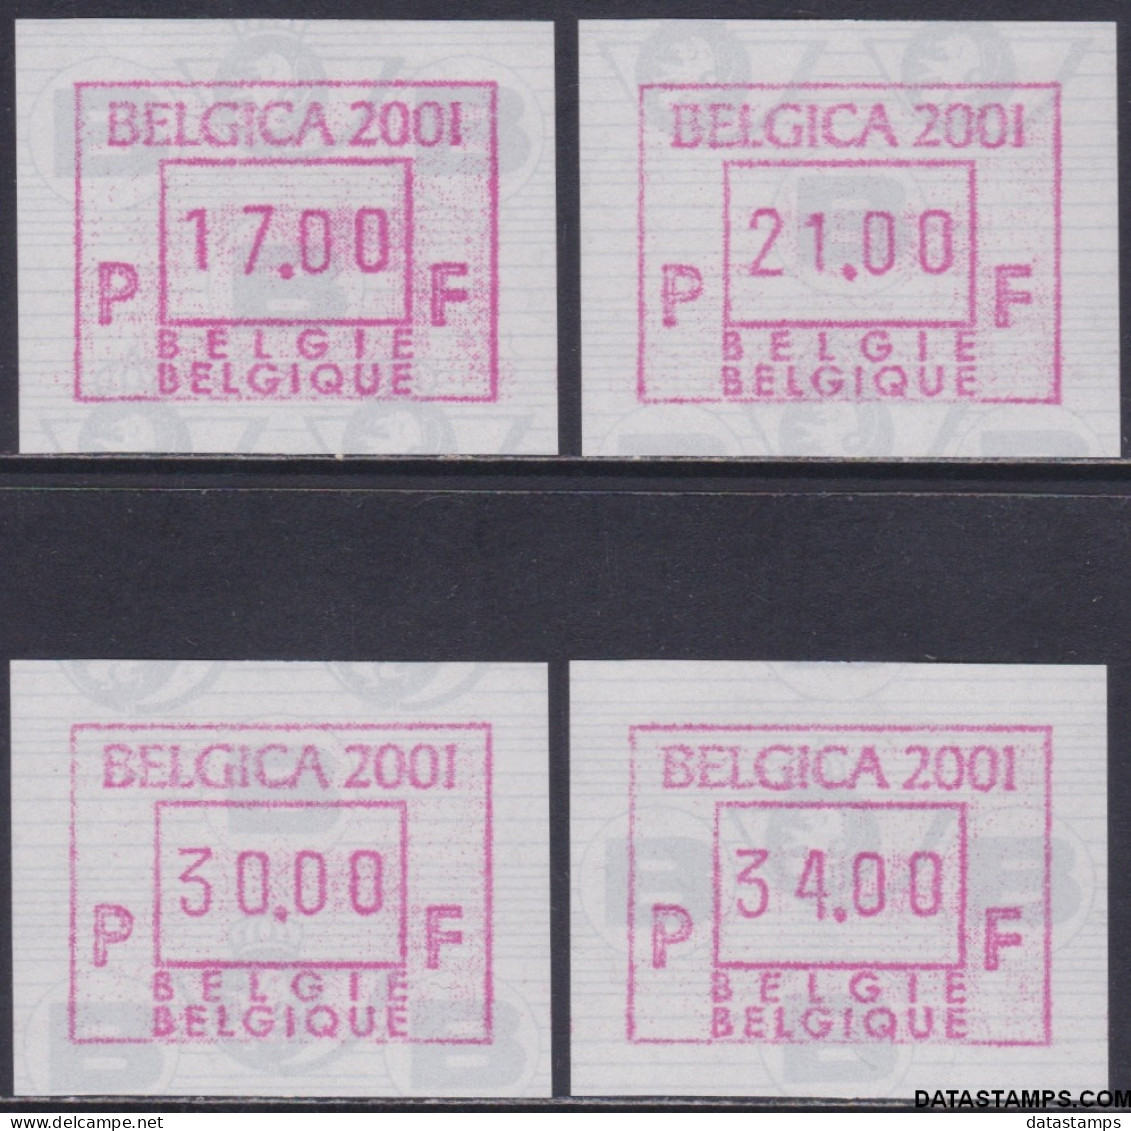 België 2001 - Mi:autom 45, Yv:TD 53, OBP:ATM 105 Set, Machine Stamp - XX - Belgica 2001 - Neufs